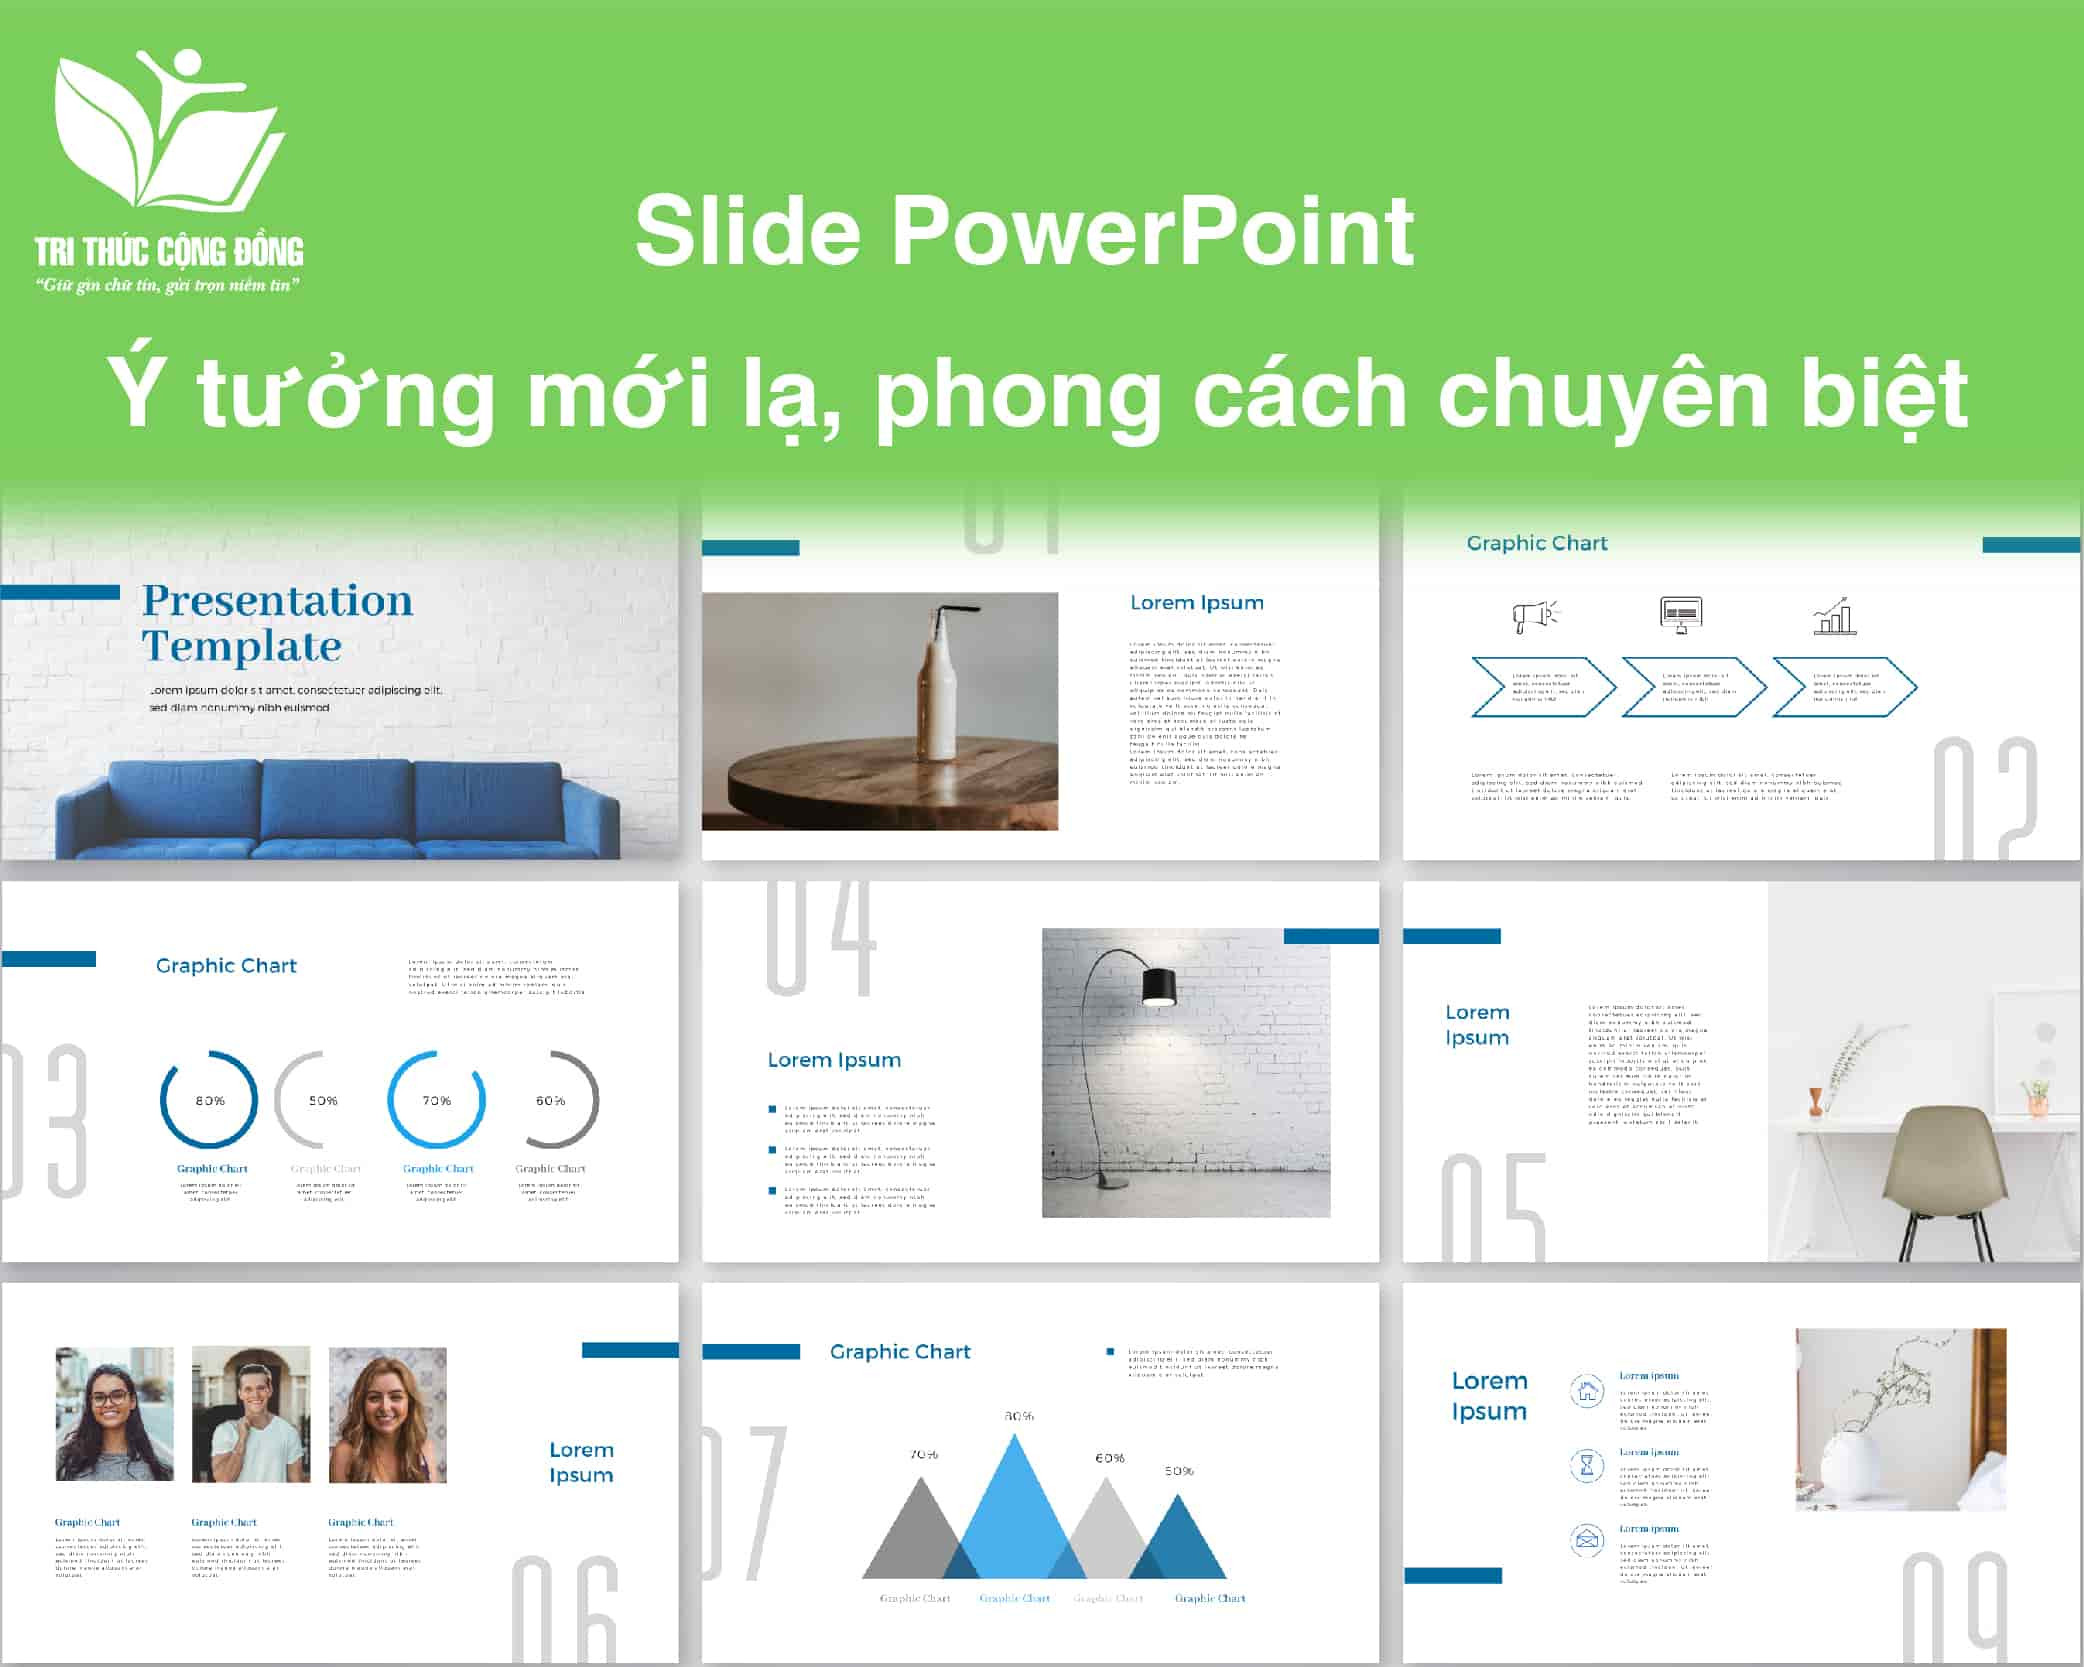 Vì sao bạn cần Slide PowerPoint?